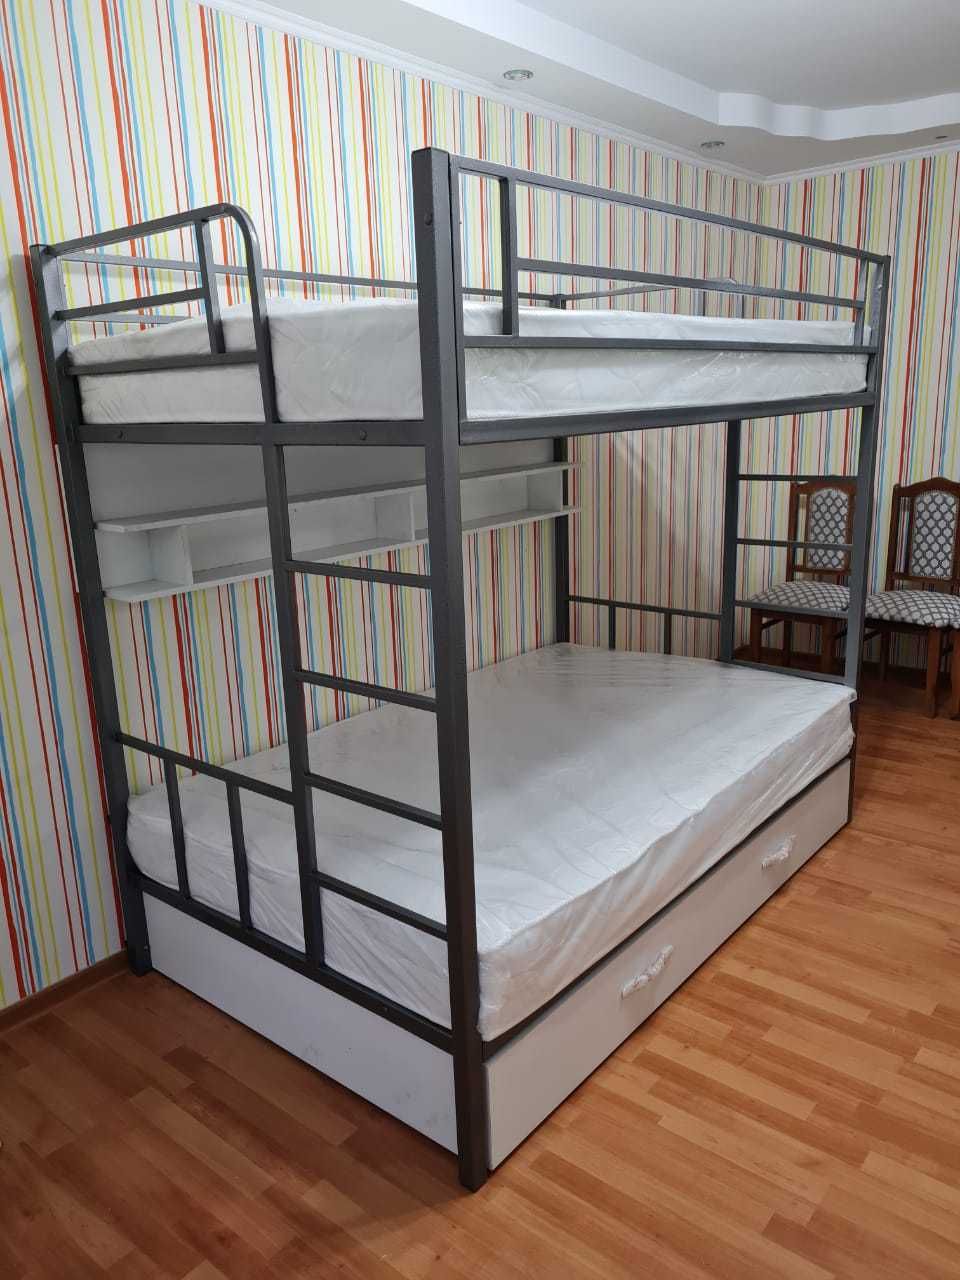 Двухъярусная металлическая кровать для хостела. Доставка бесплатно.